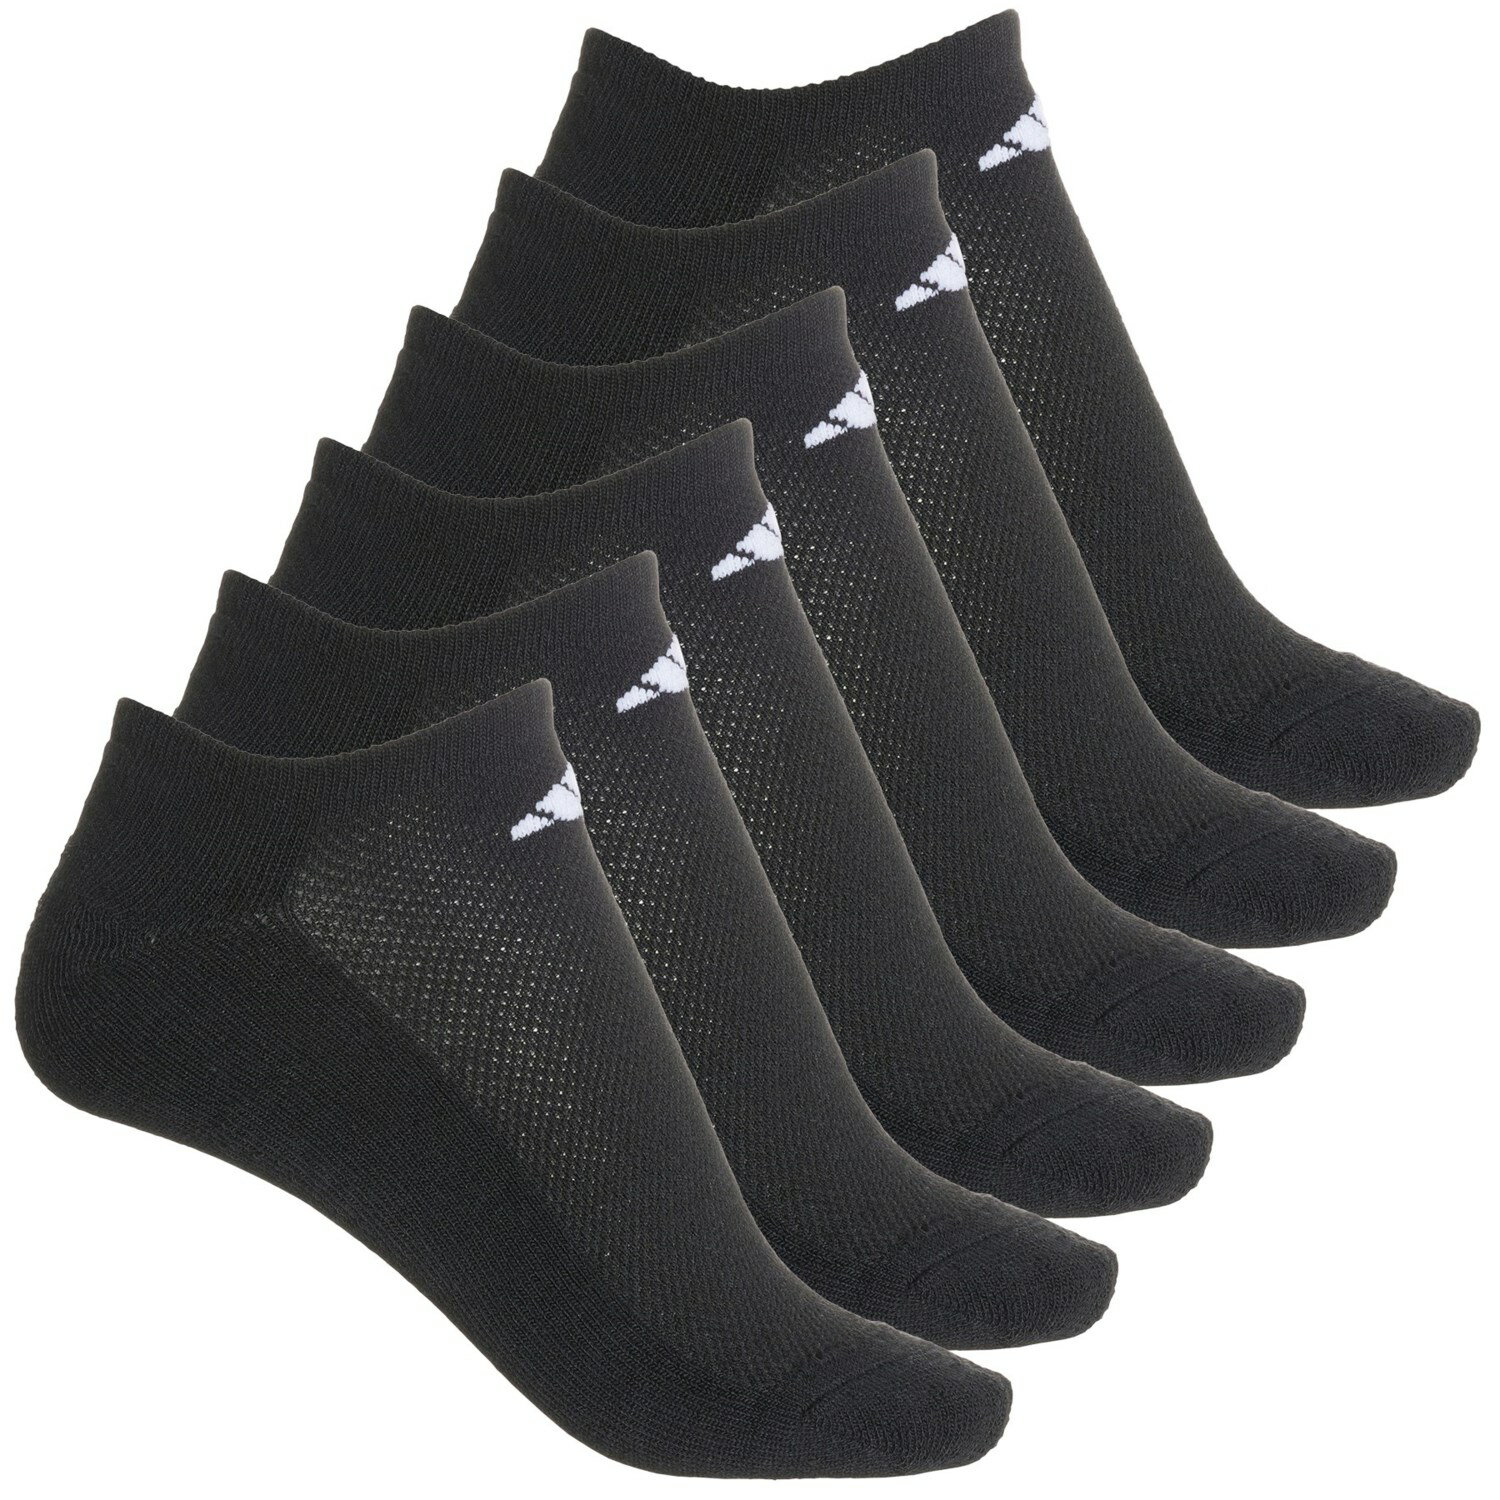 () AfB_X fB[X NbV AX`bN m[V[ \bNX adidas women Cushioned Athletic No-Show Socks (For Women) Black/White